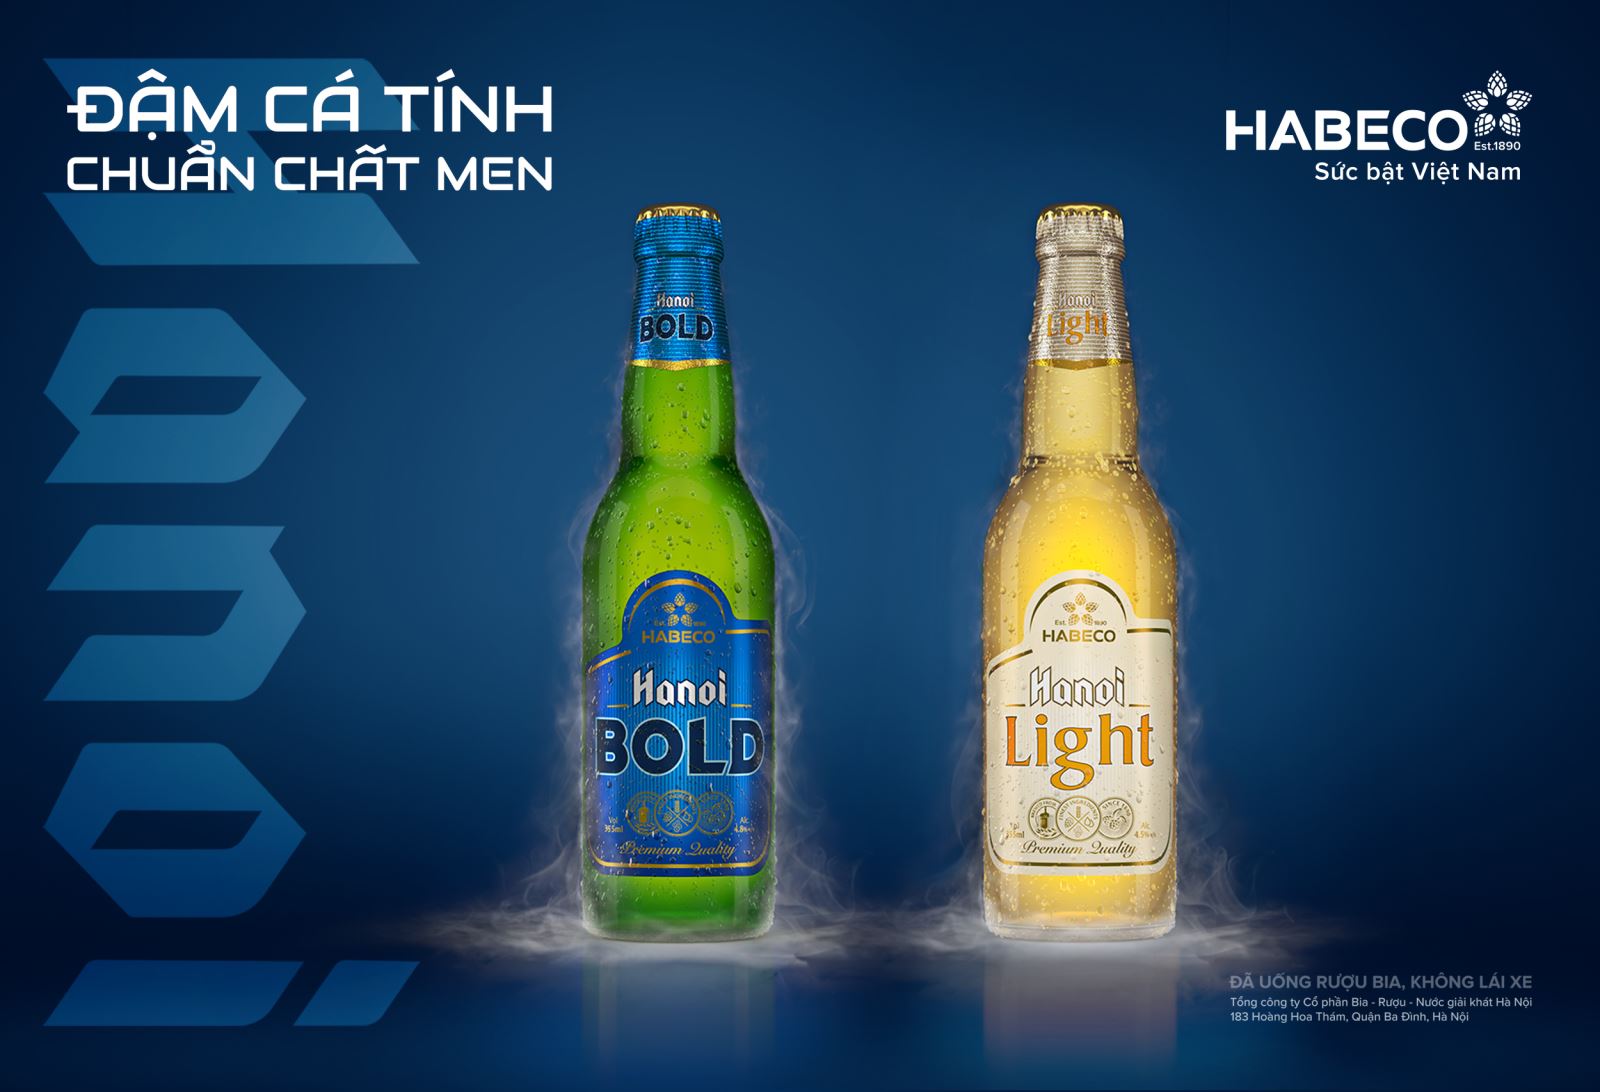 HABECO ra mắt Hanoi Bold và Hanoi Light dành cho giới trẻ